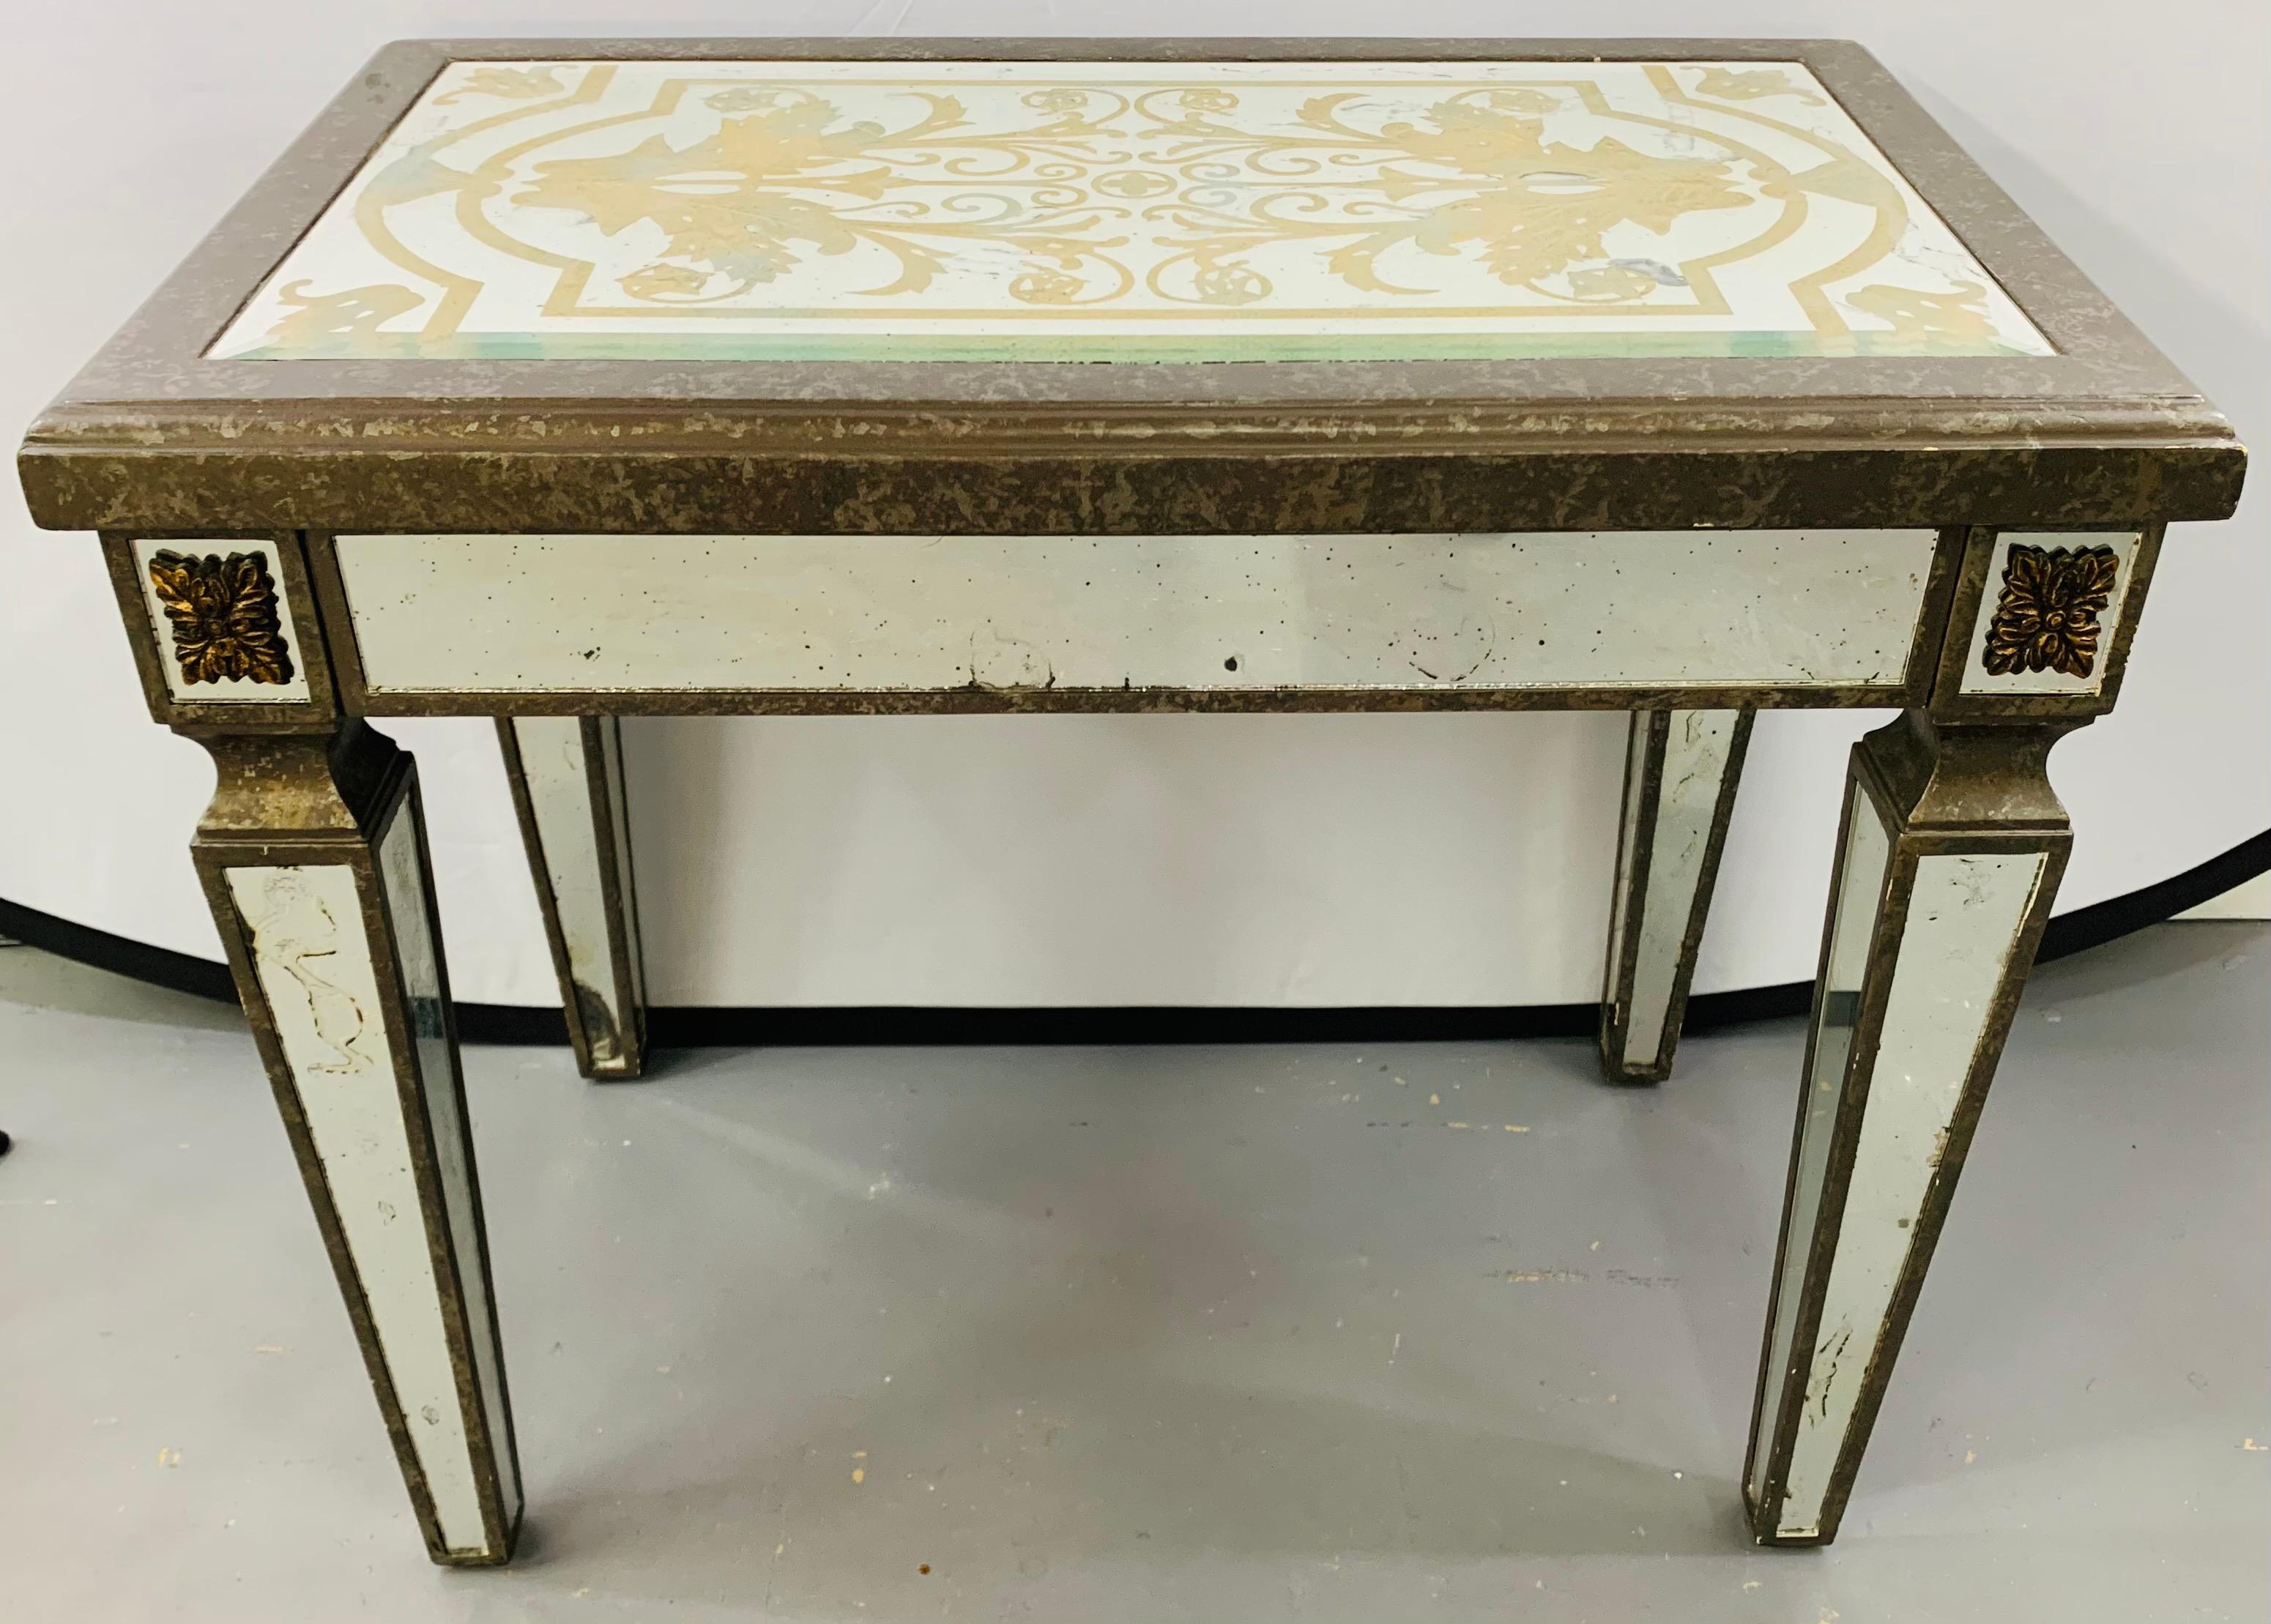 Ein verspiegelter Beistelltisch im Hollywood-Regency-Stil. Die Tischplatte hat ein feines goldgelbes Farbdesign mit einem antikisierten Holzrahmen. Die kannelierten Beine sind elegant und ebenfalls antik verspiegelt.

Es gibt eine kleine